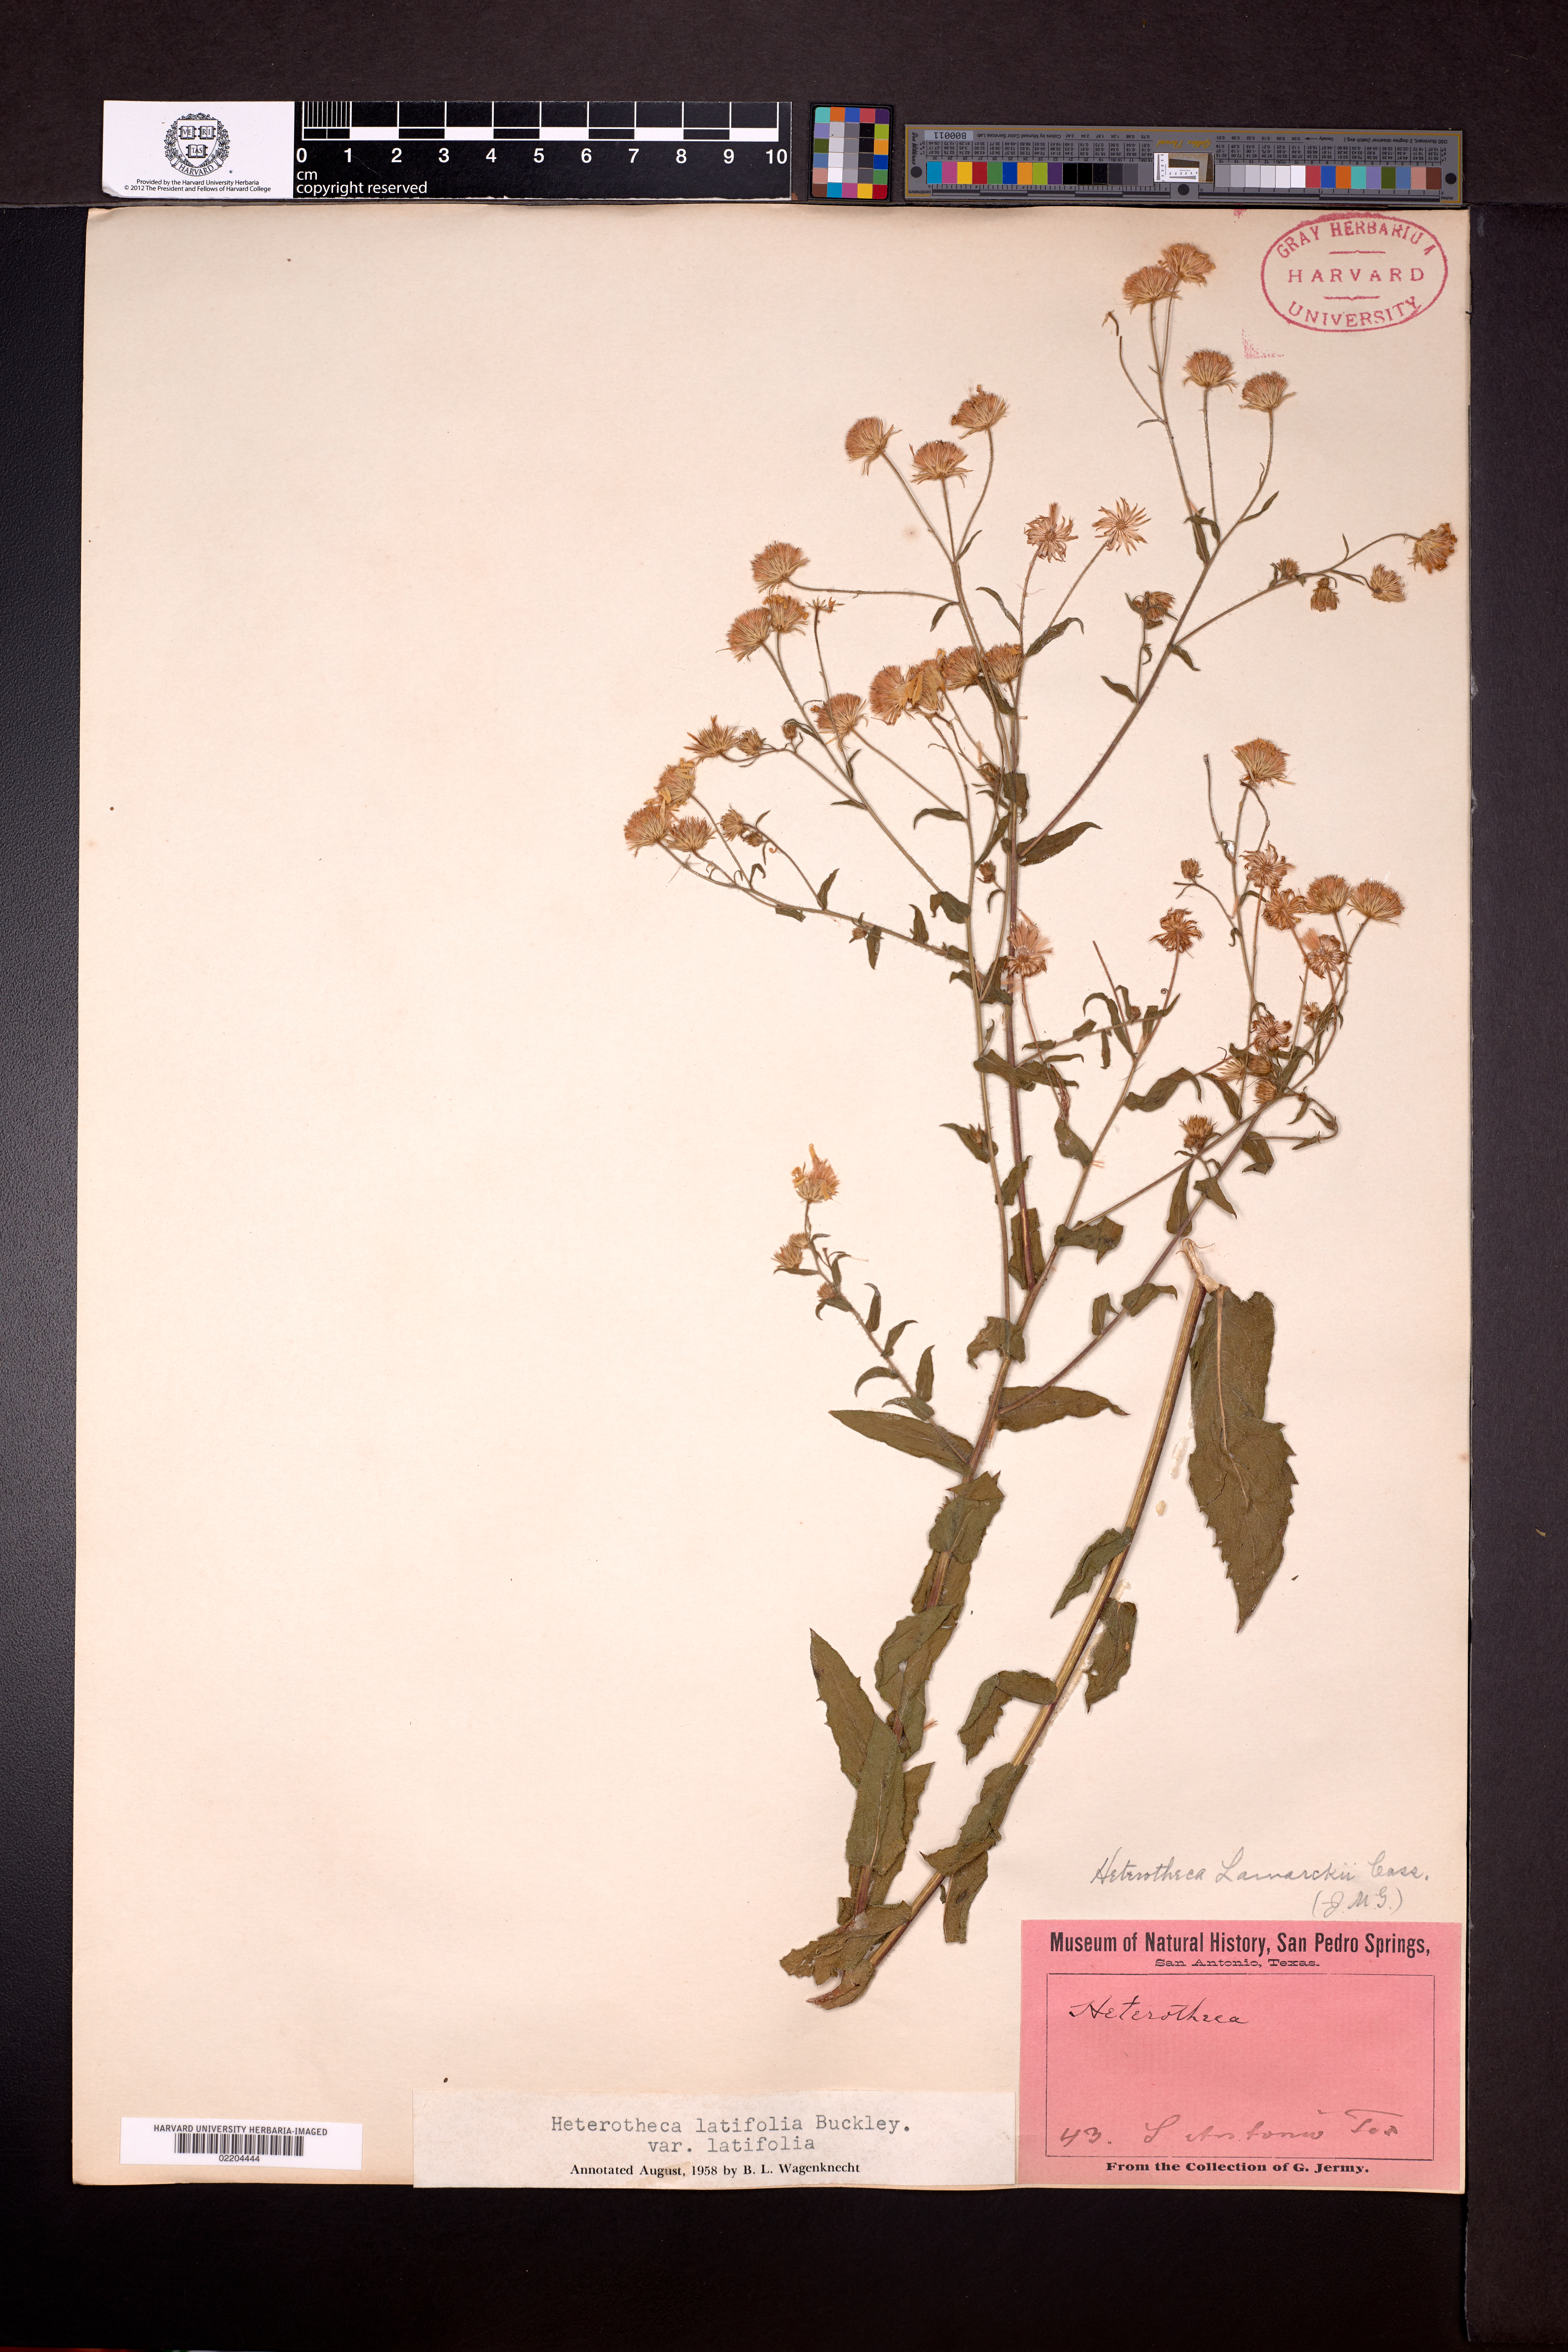 Heterotheca subaxillaris subsp. latifolia image